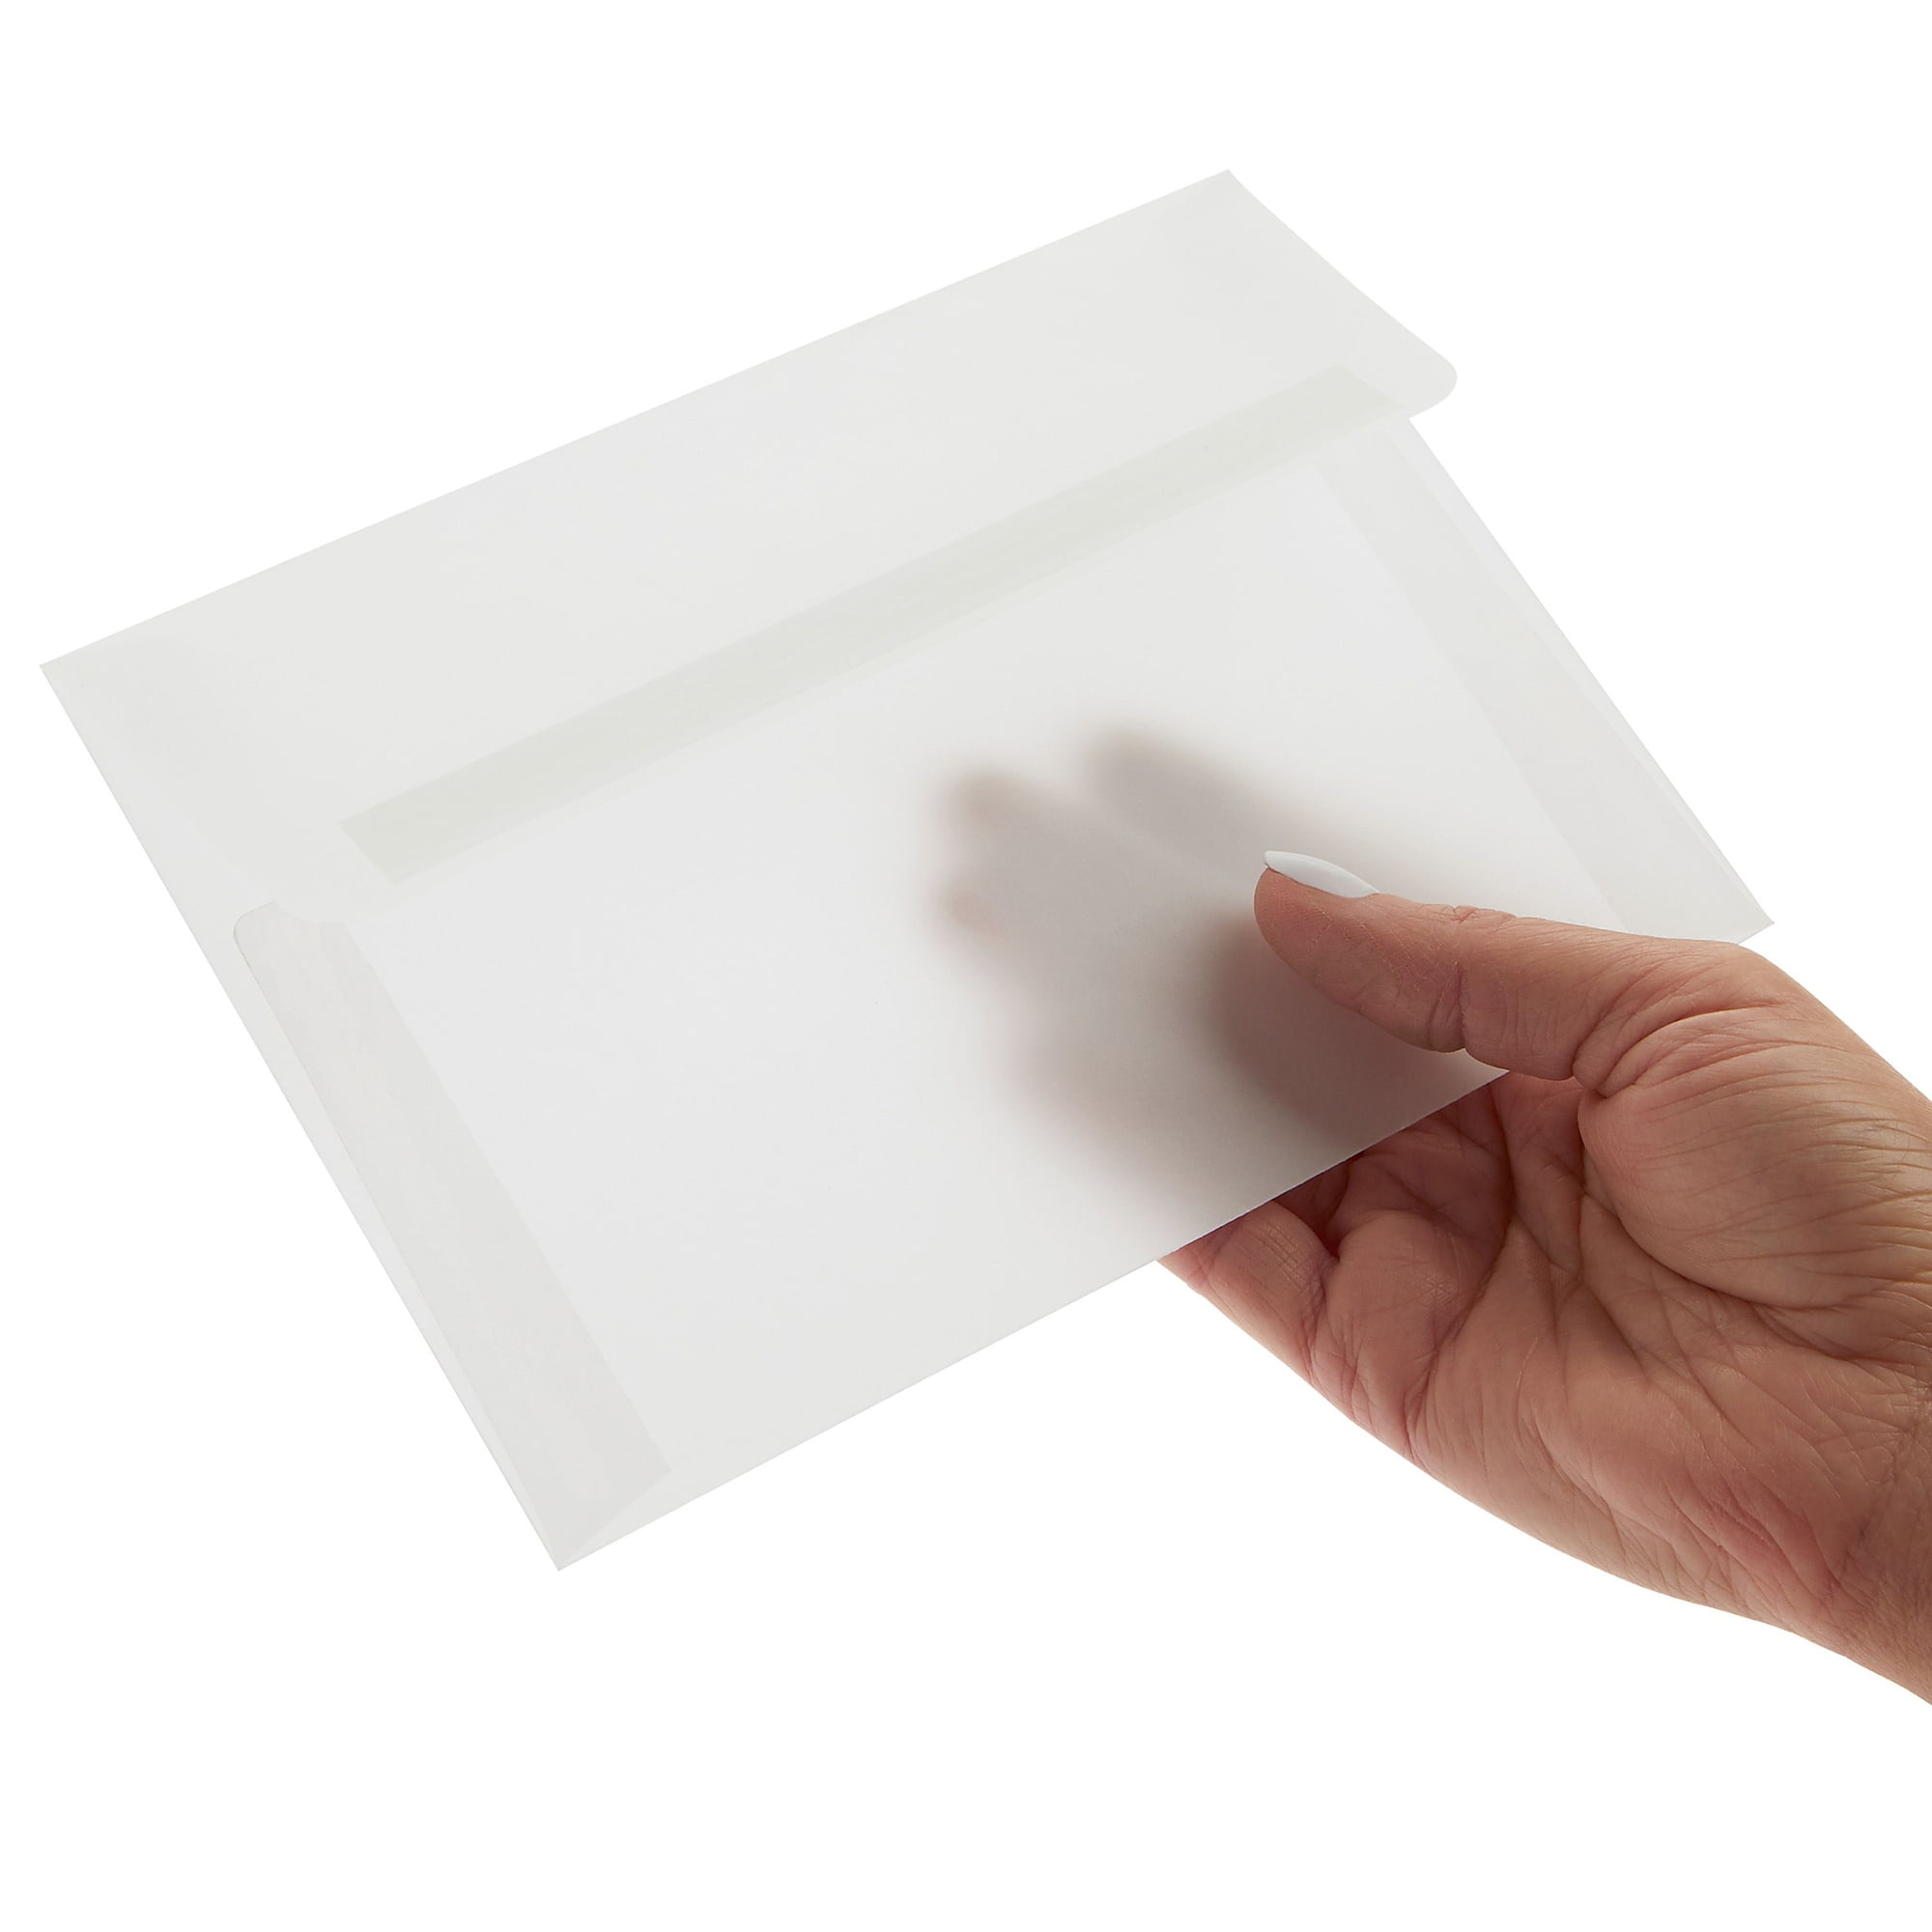 25 Square Vellum Translucent Envelopes, Vellum Wedding Envelopes